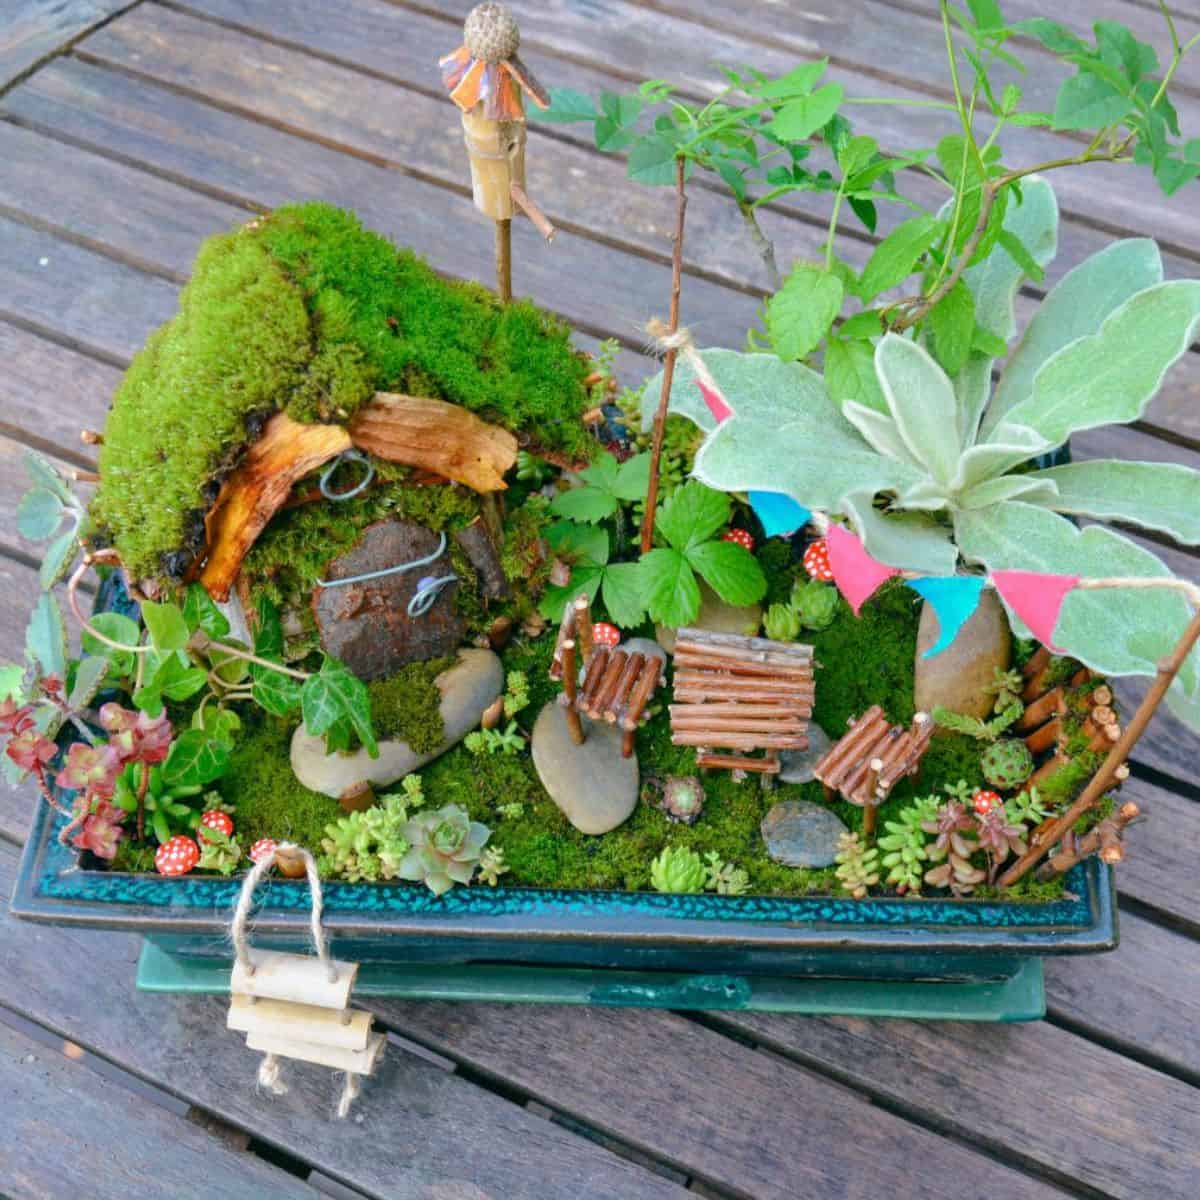 Fairy succulent garden on a wooden deck.